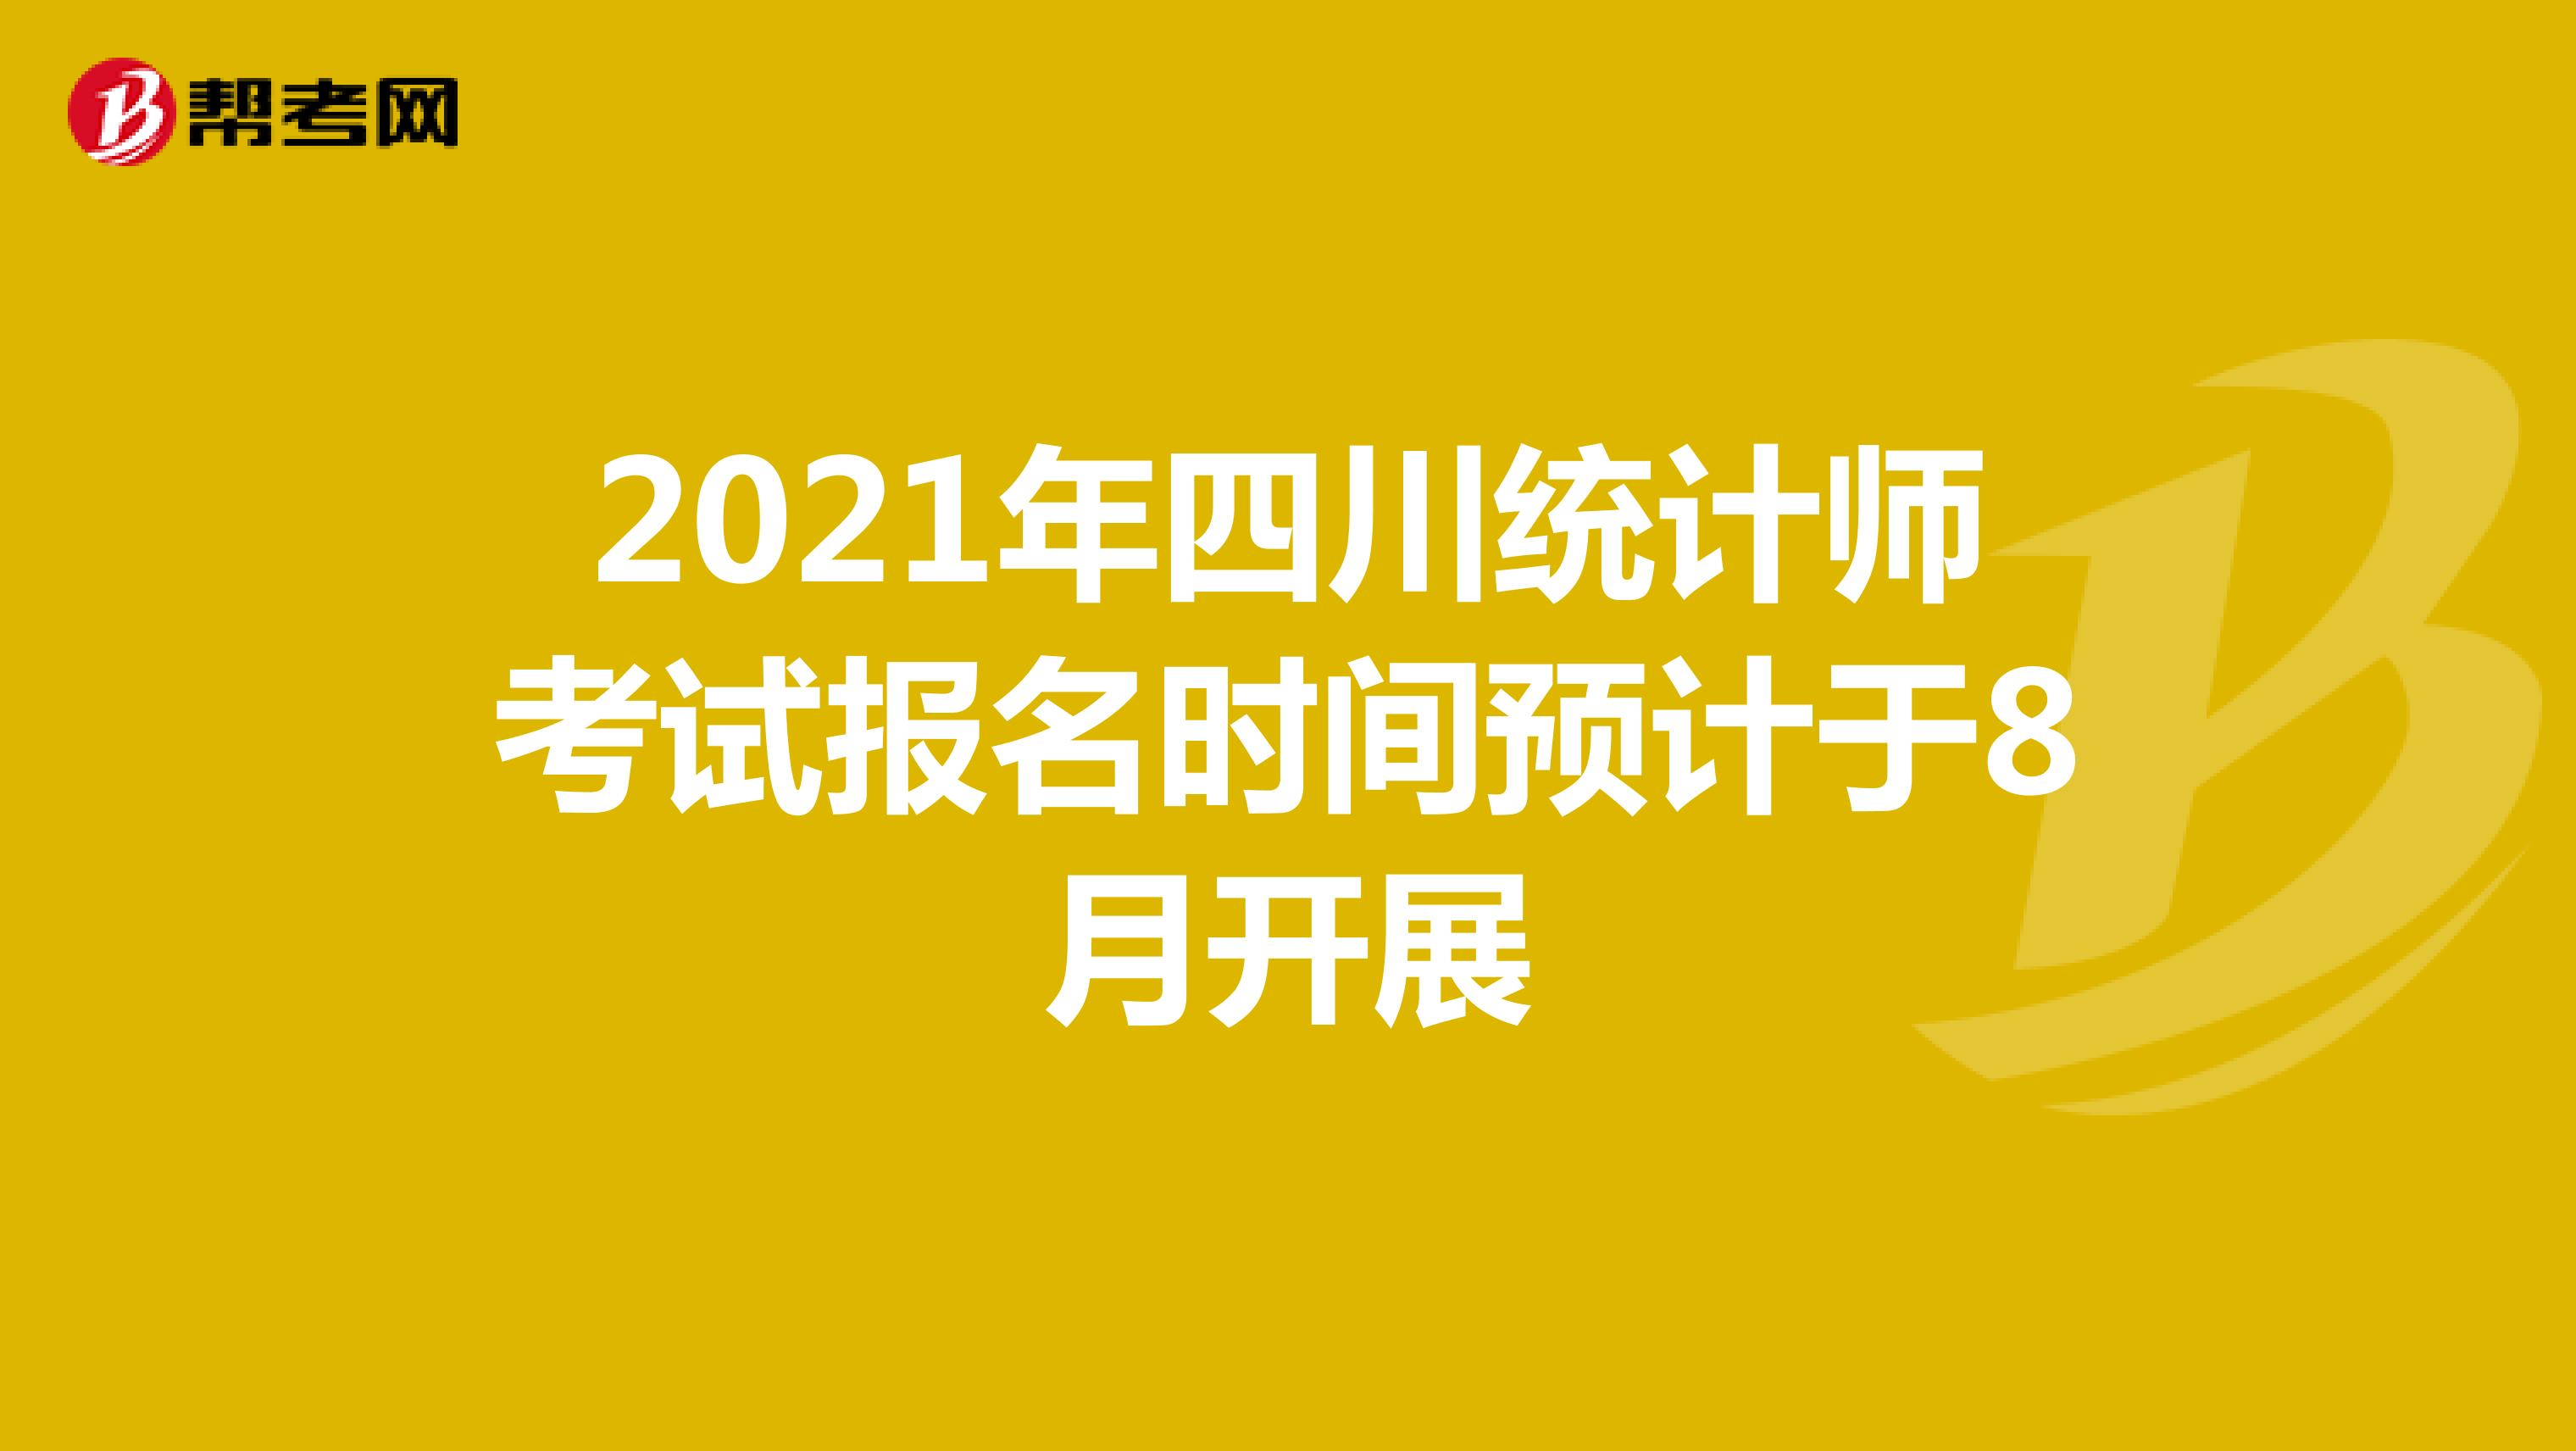 2021年四川统计师考试报名时间预计于8月开展